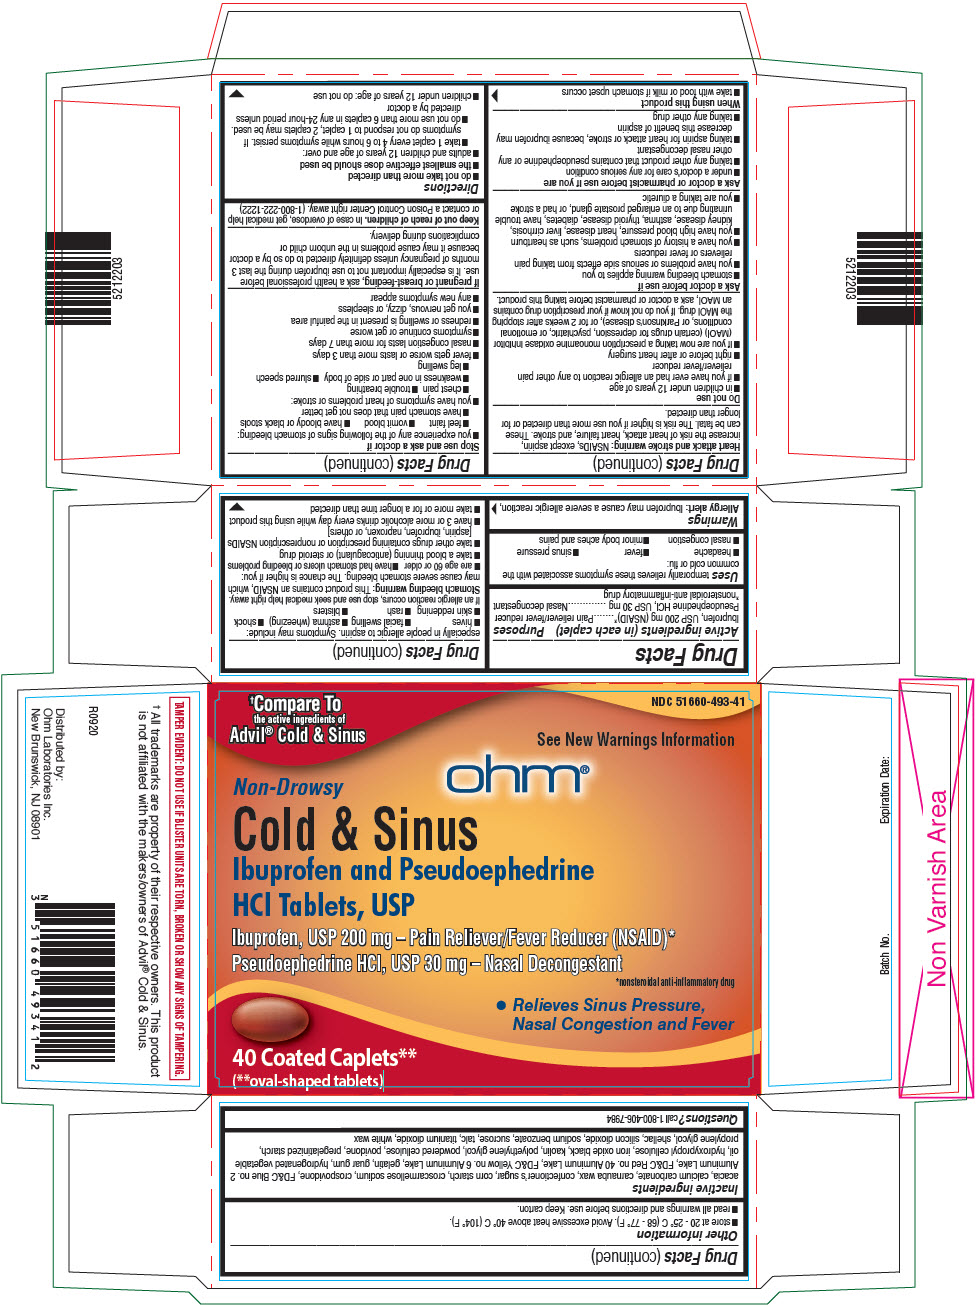 PRINCIPAL DISPLAY PANEL - 200 mg/30 mg Tablet Blister Pack Carton